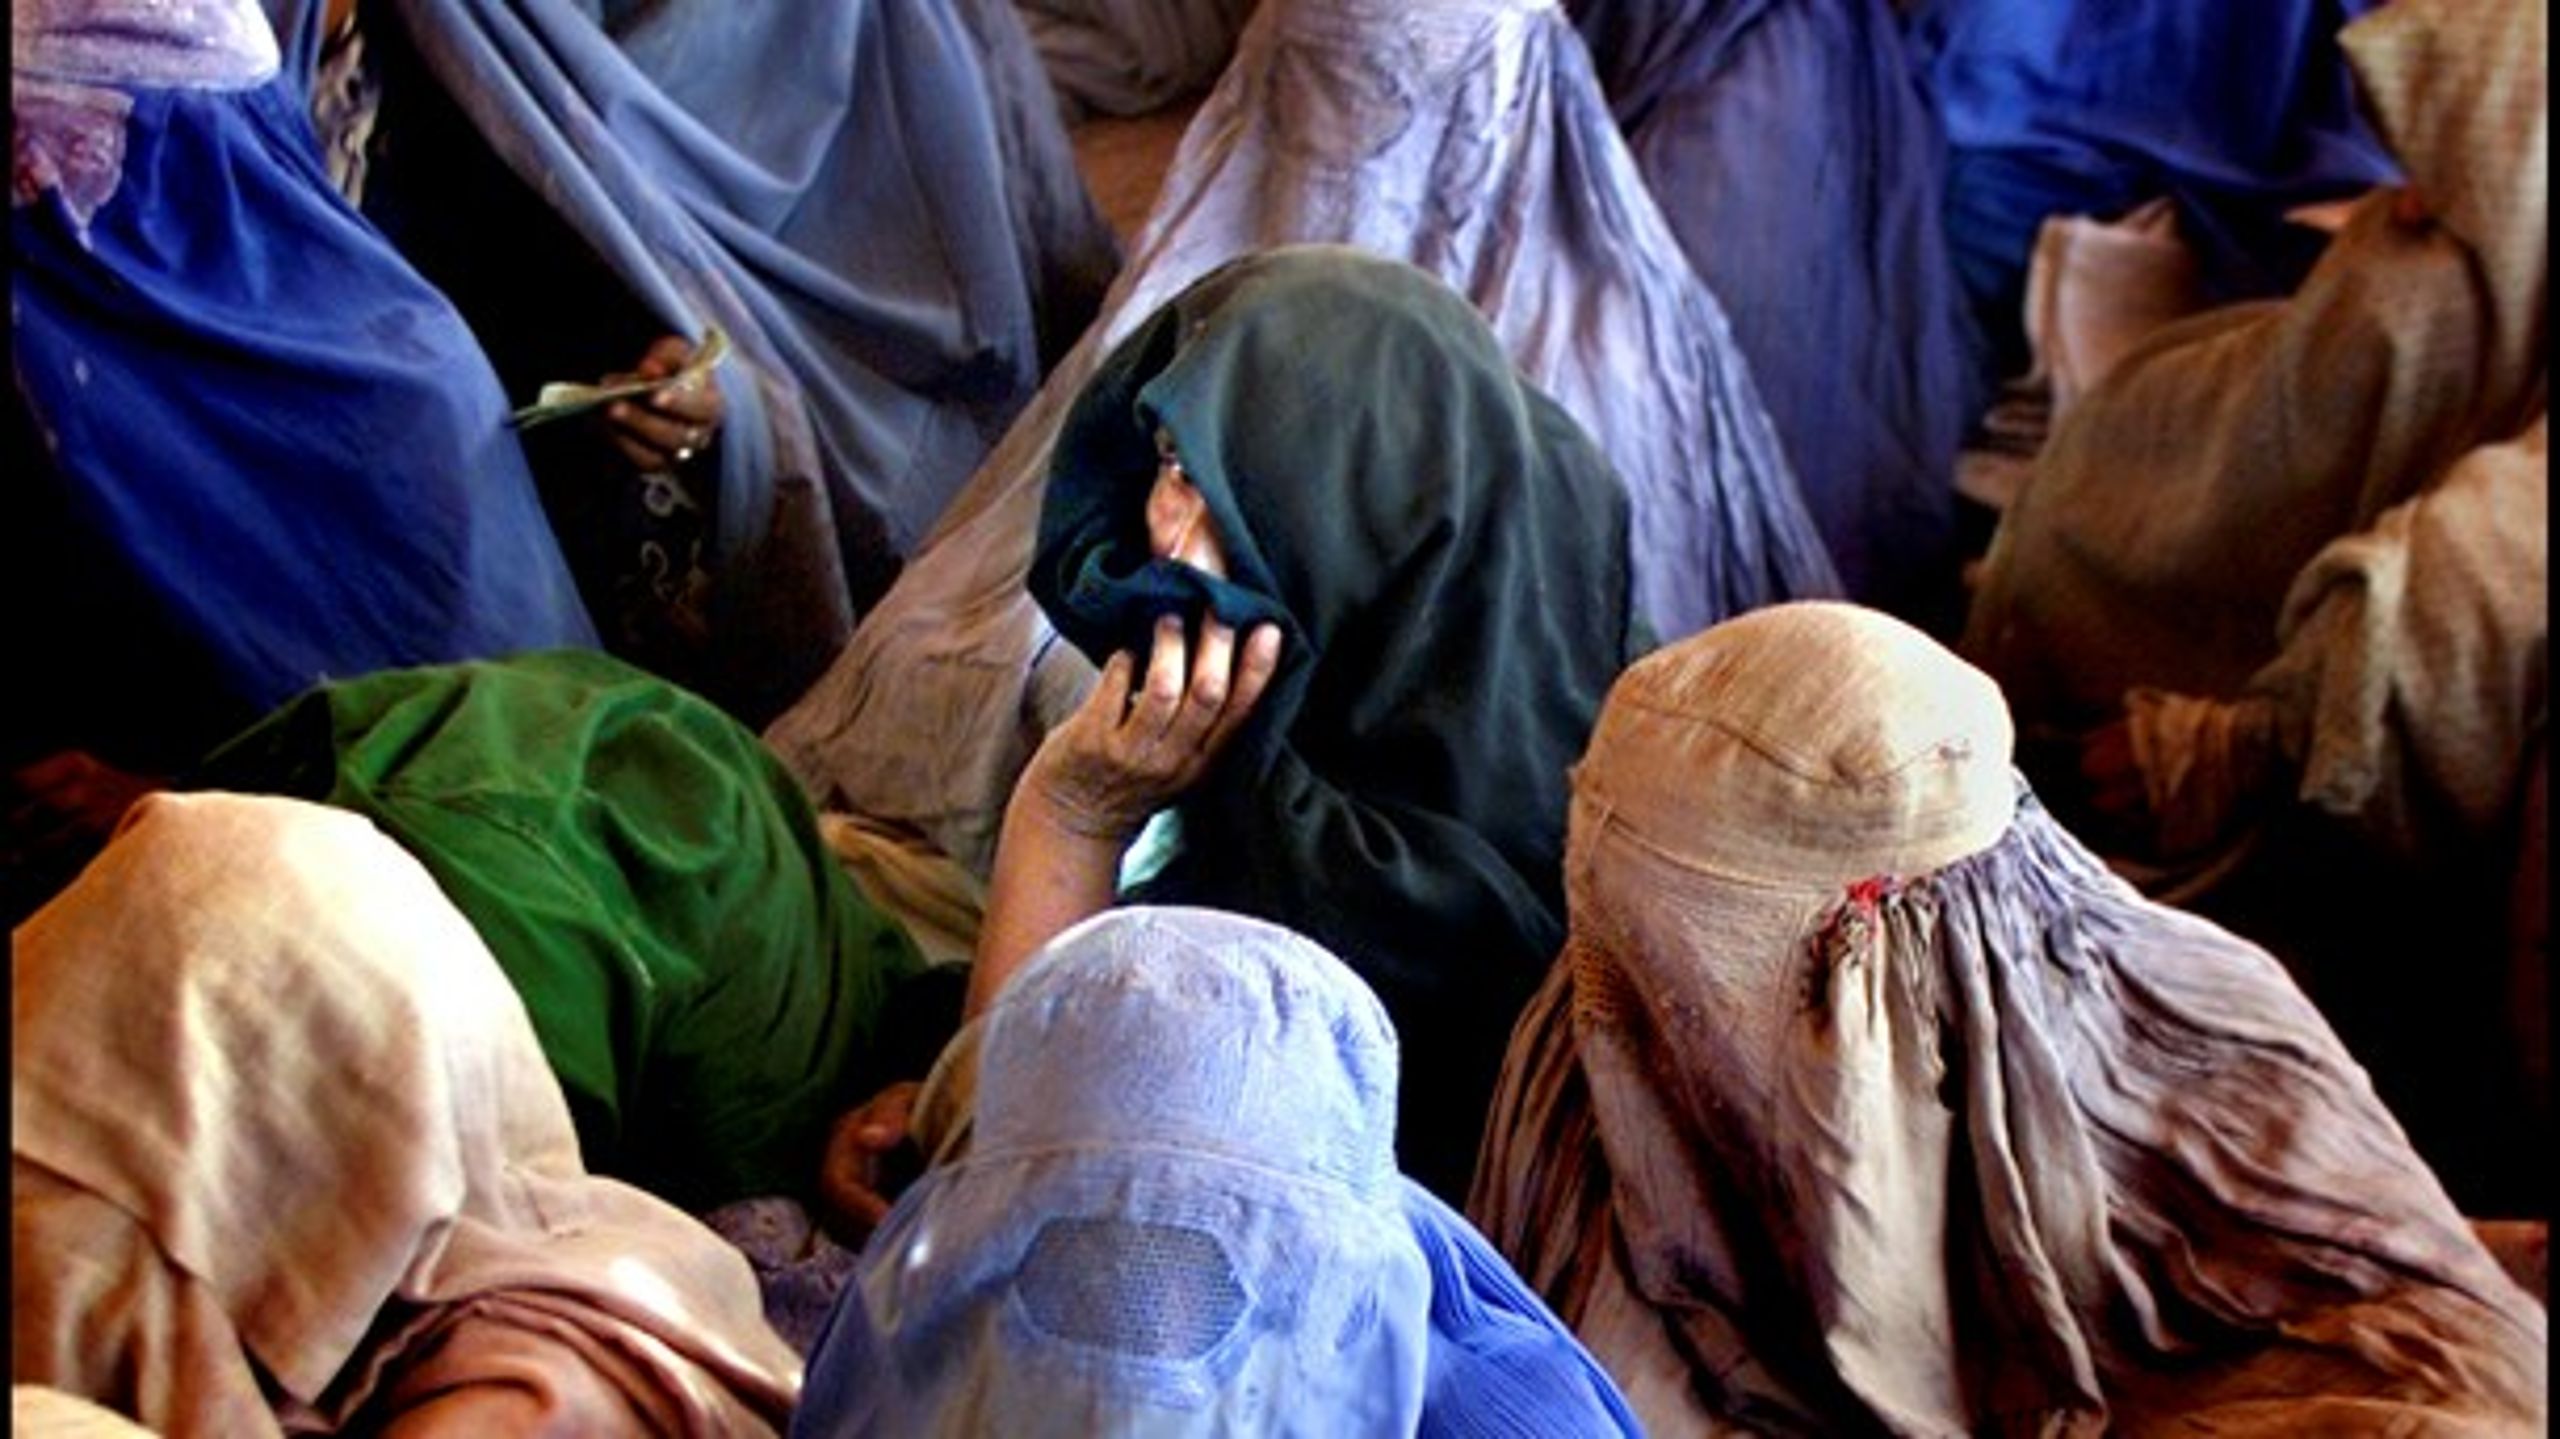 UNDERTRYKKELSE: Afghanske kvinder i en flygtingelejr i Pershawar, Pakistan.